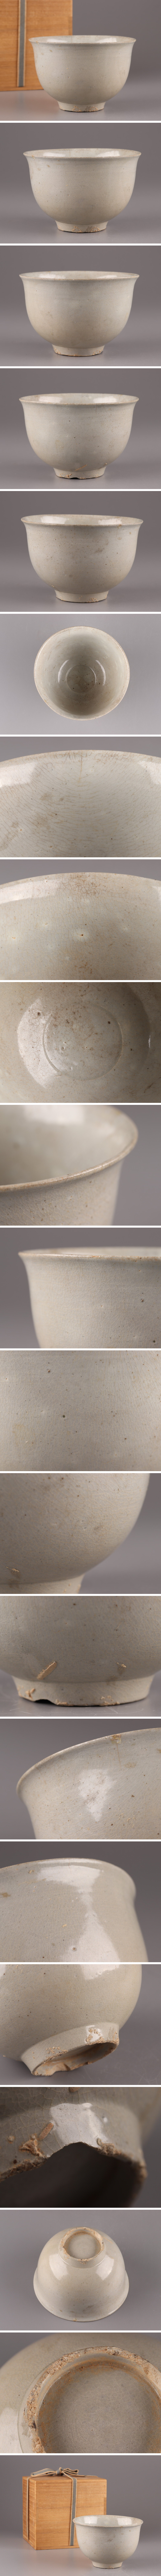 【即時発送】古美術 朝鮮古陶磁器 李朝 白磁 茶碗 時代物 極上品 初だし品 3986 李朝